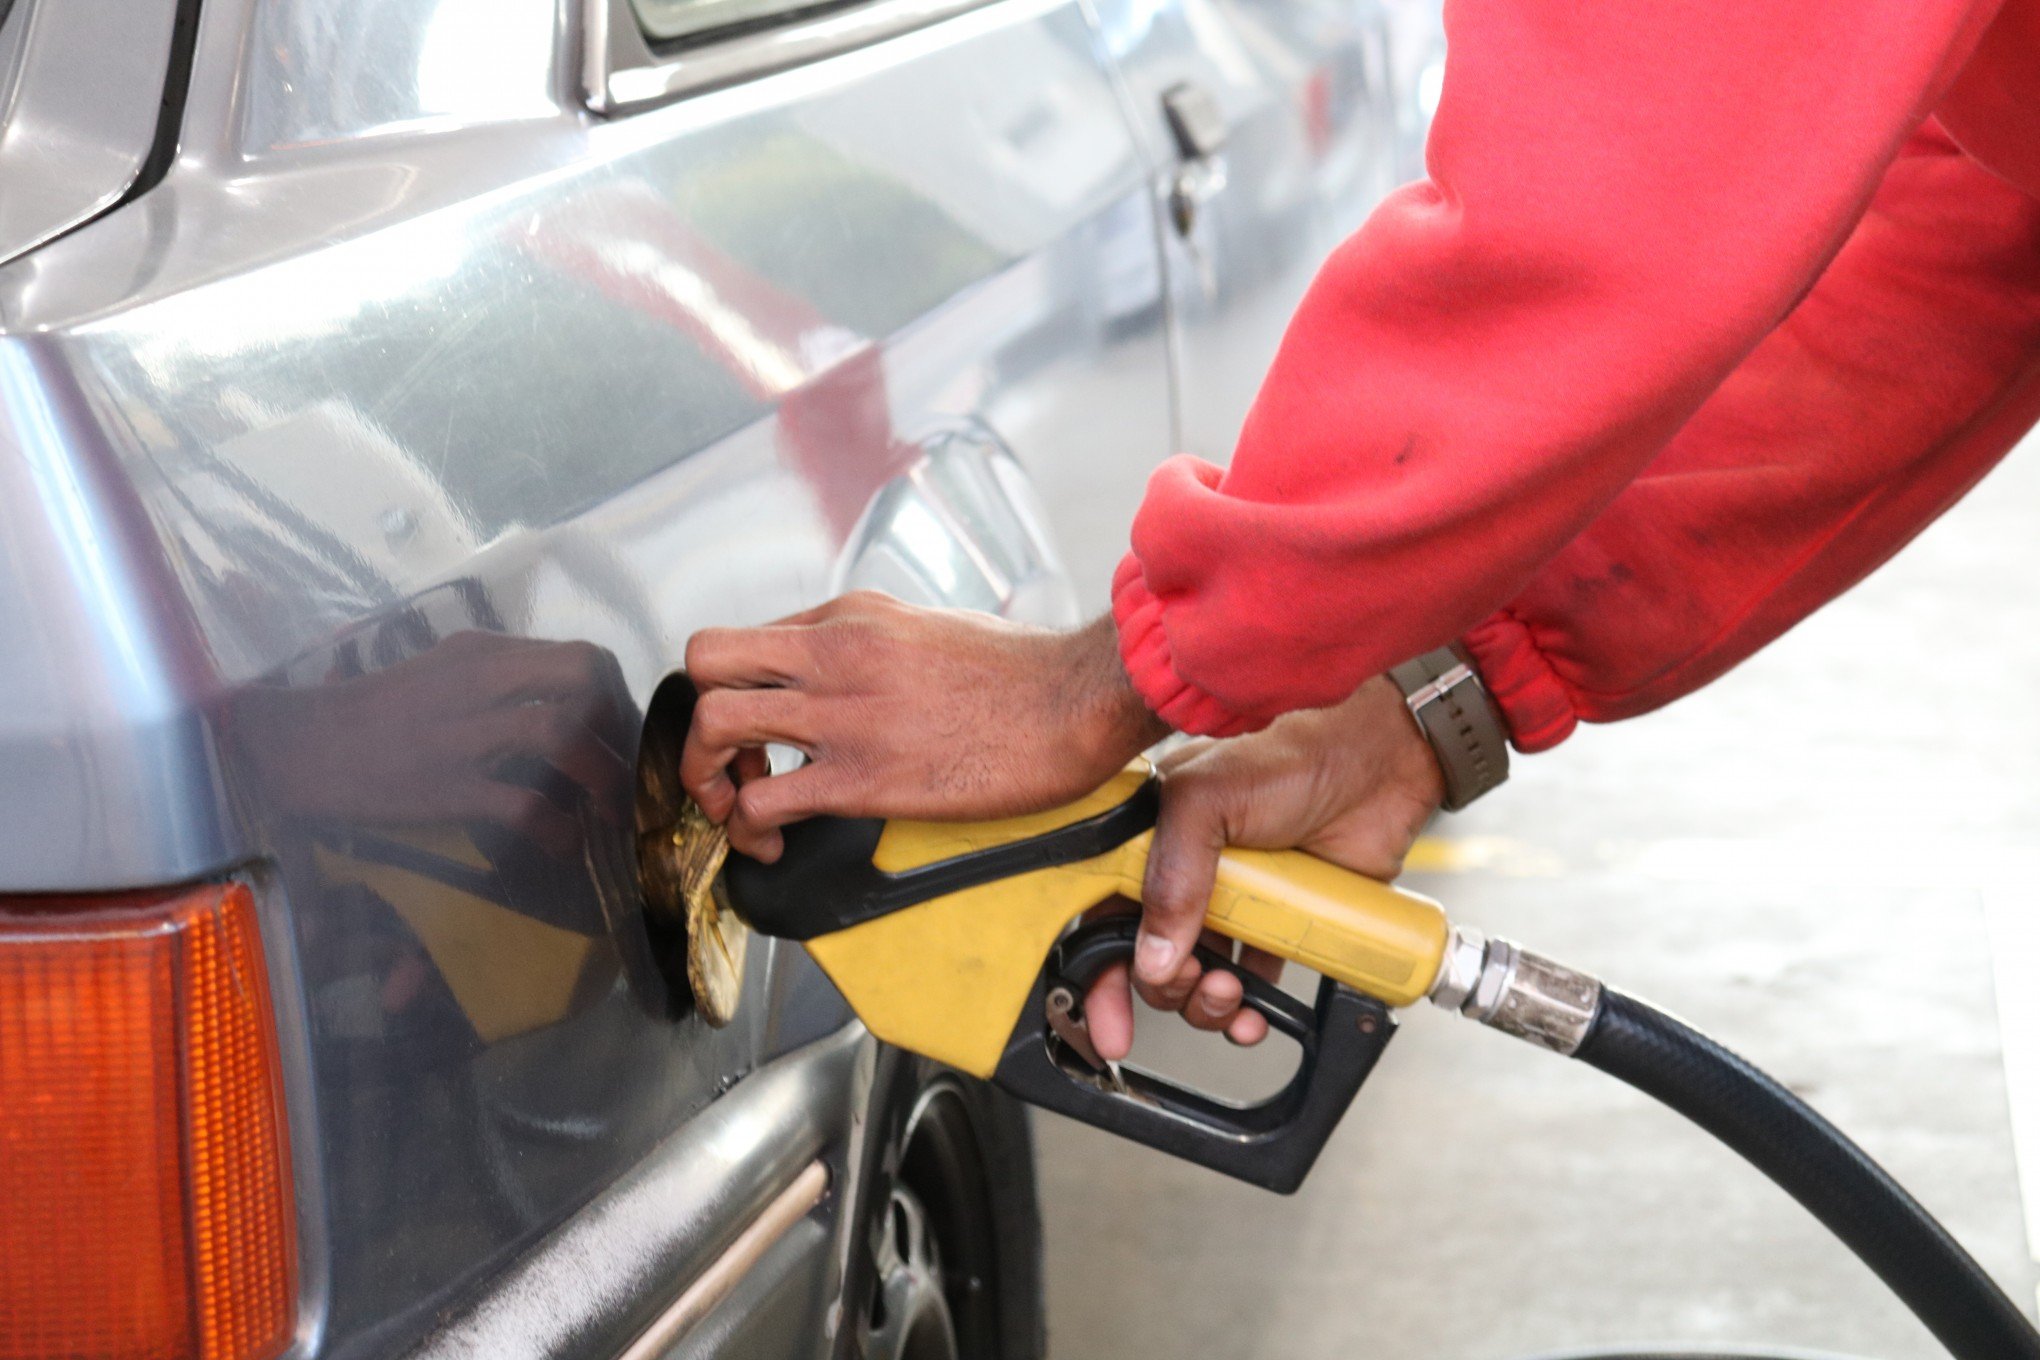 Sulpetro diz estar atento às alterações na legislação que podem impactar no preço dos combustíveis